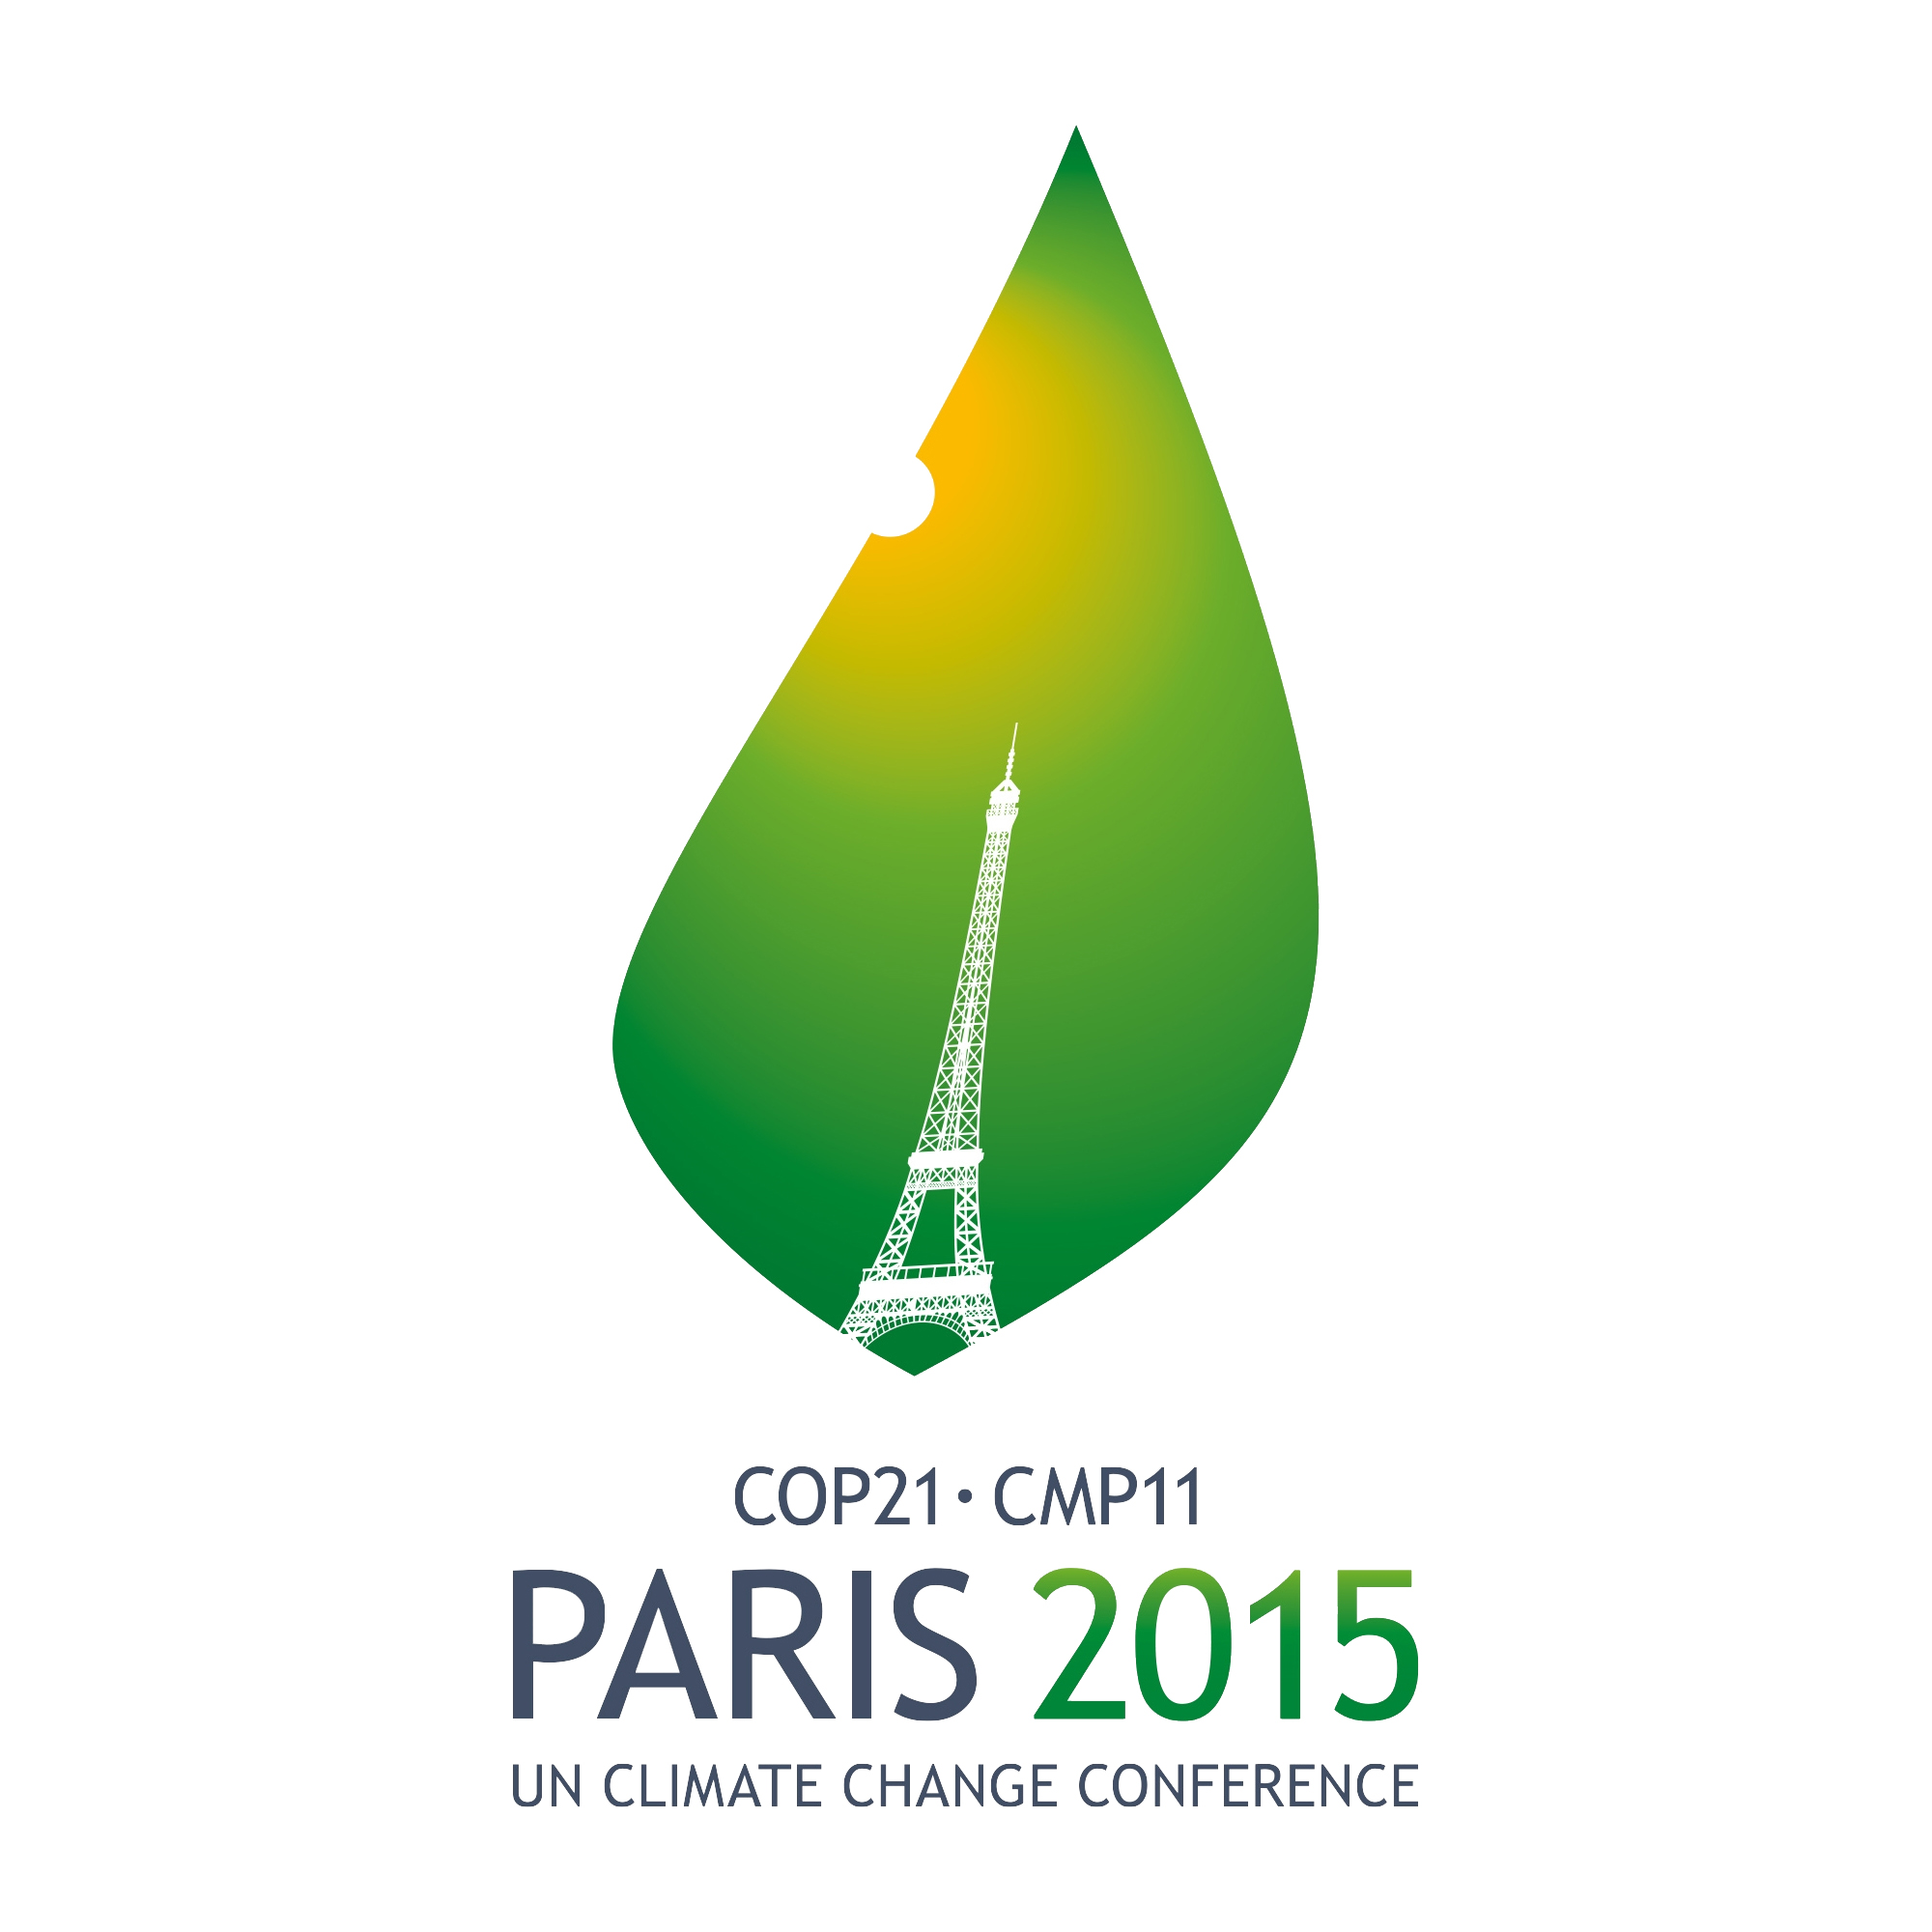 Парижское соглашение по климату. Парижское соглашение об изменении климата. Парижское соглашение по климату 2015. Парижская конференция по климату.